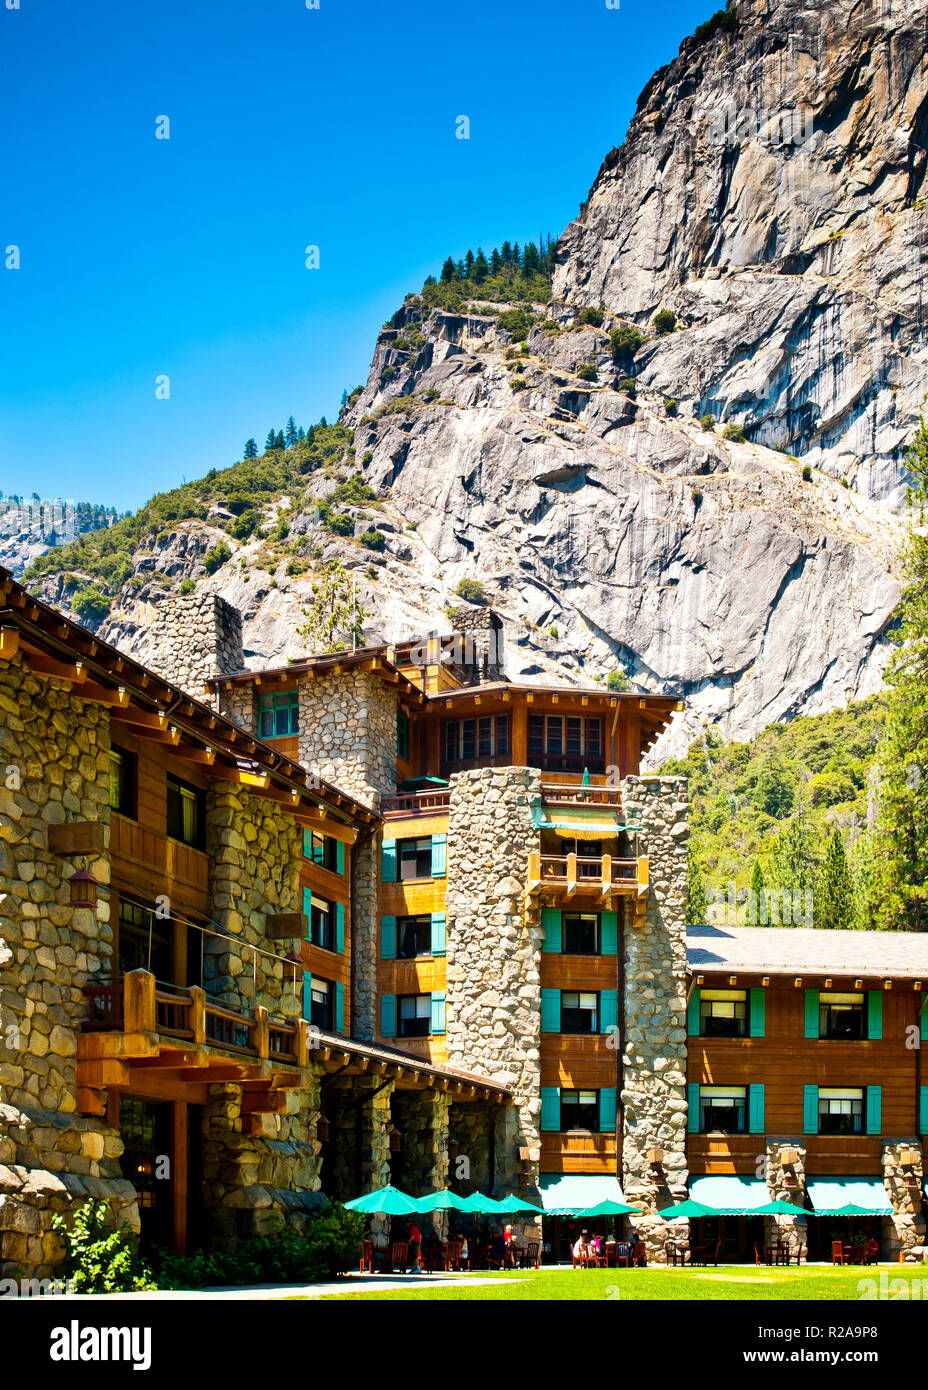 Formell bekannt als das majestätische Hotel, das jetzt in Ahwahnee Hotel umbenannt wird, eingebettet im Yosemite Nationalpark, aus Holz und Holz gebaut. Kalifornien, USA. Stockfoto